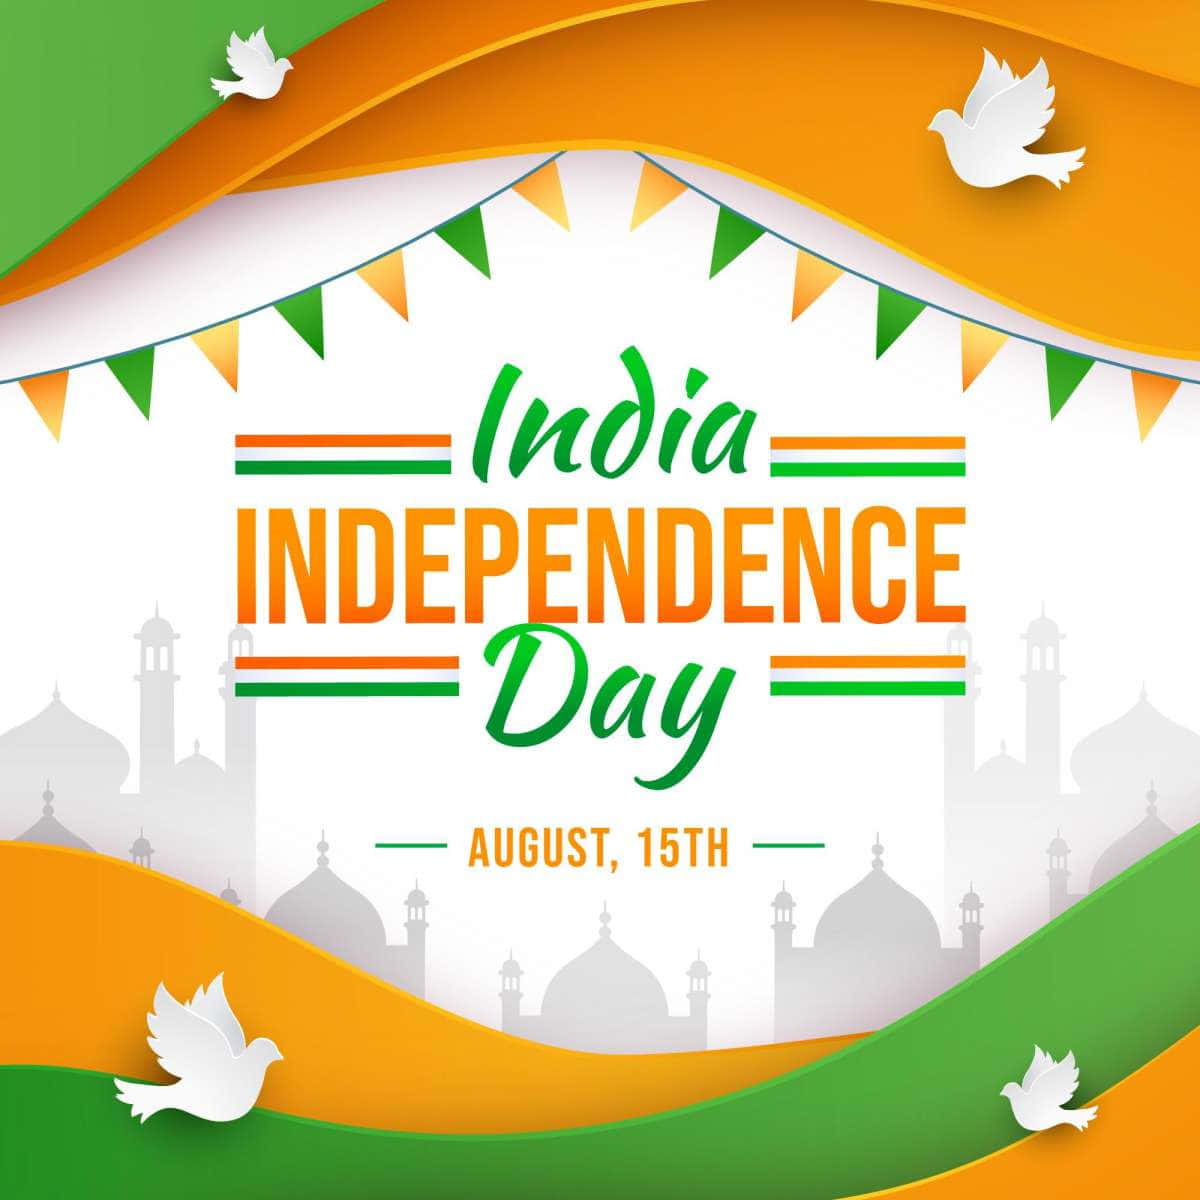 Imagende Palomas Verdes Y Amarillas En El Día De La Independencia De India.